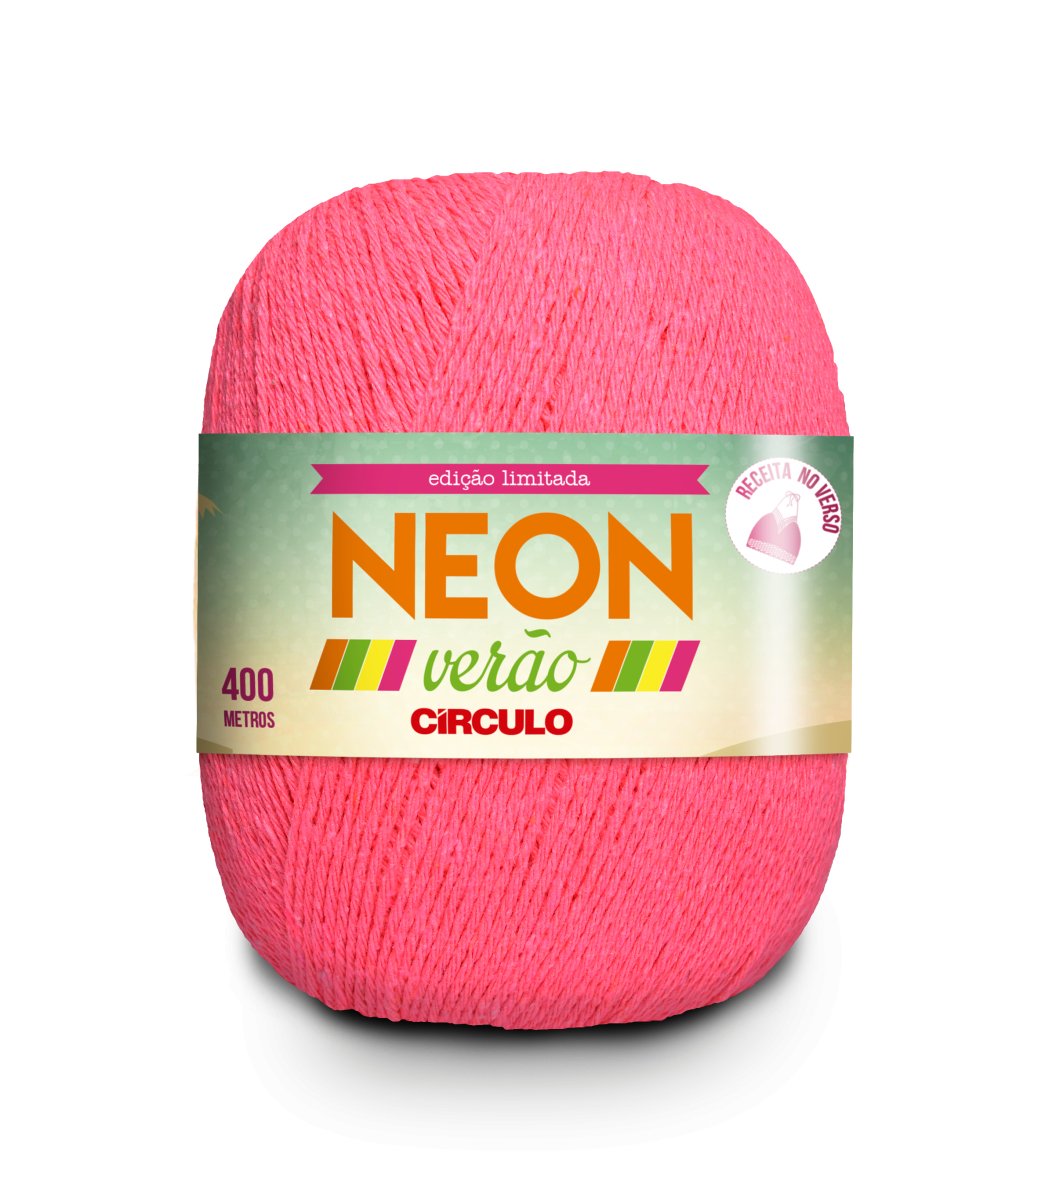 Hilo Circulo NEON VERAO 50% Algodón 50% Poliéster 406m - 150g, Color Rosa Neón (337005-6372)